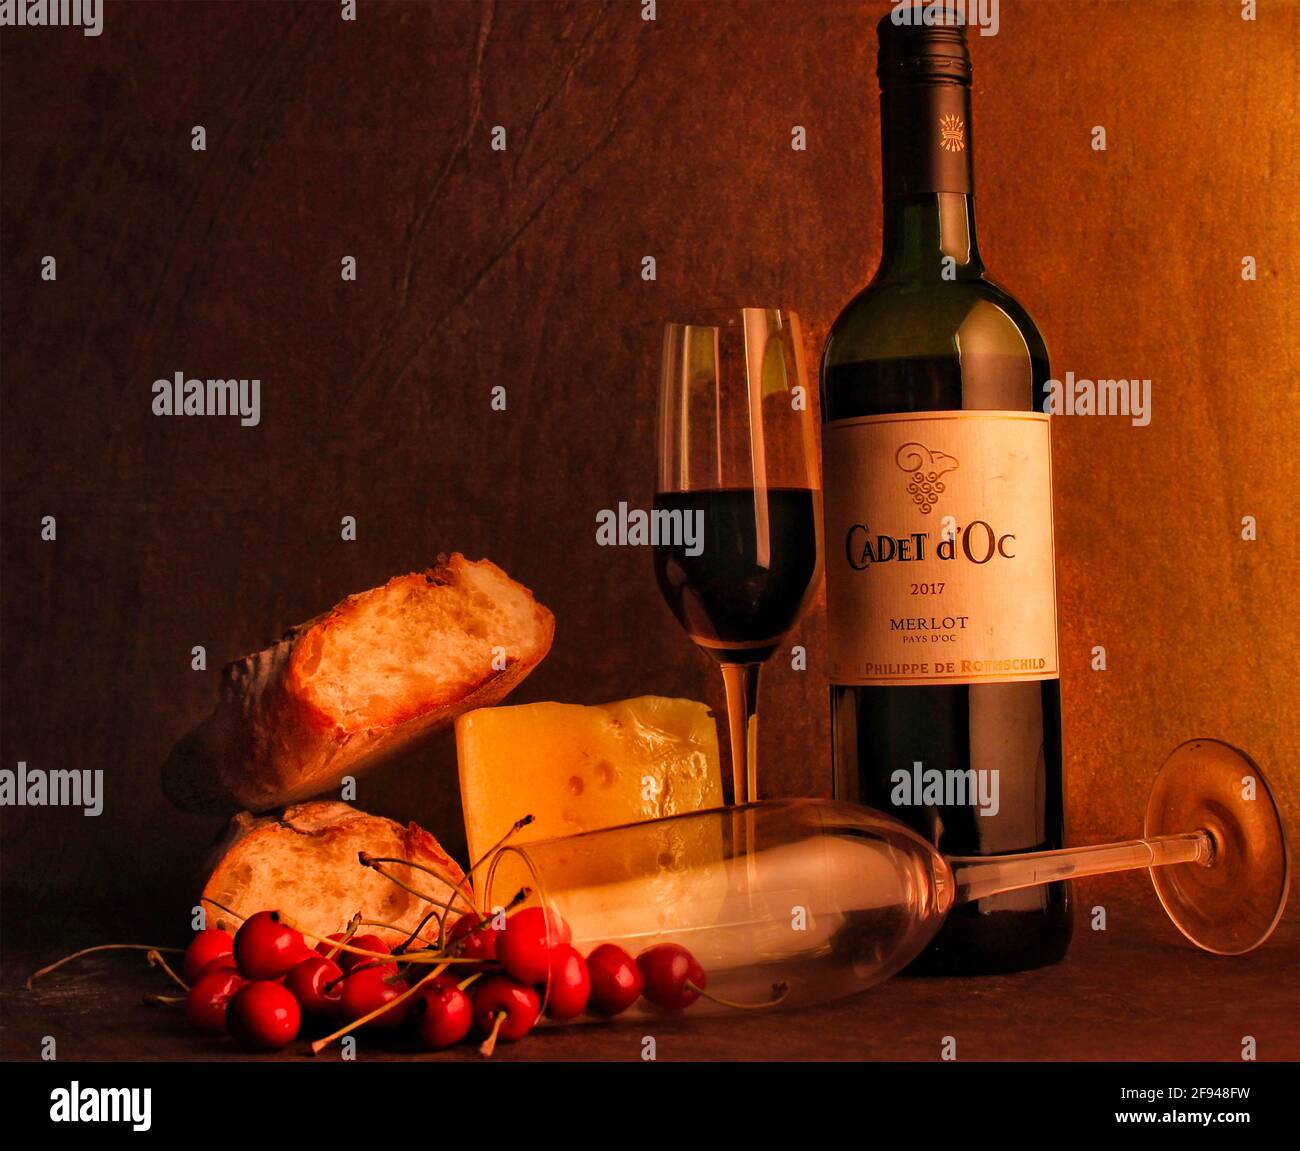 Studio shot of red wine bottle and glass, Mumbai, India Stock Photo